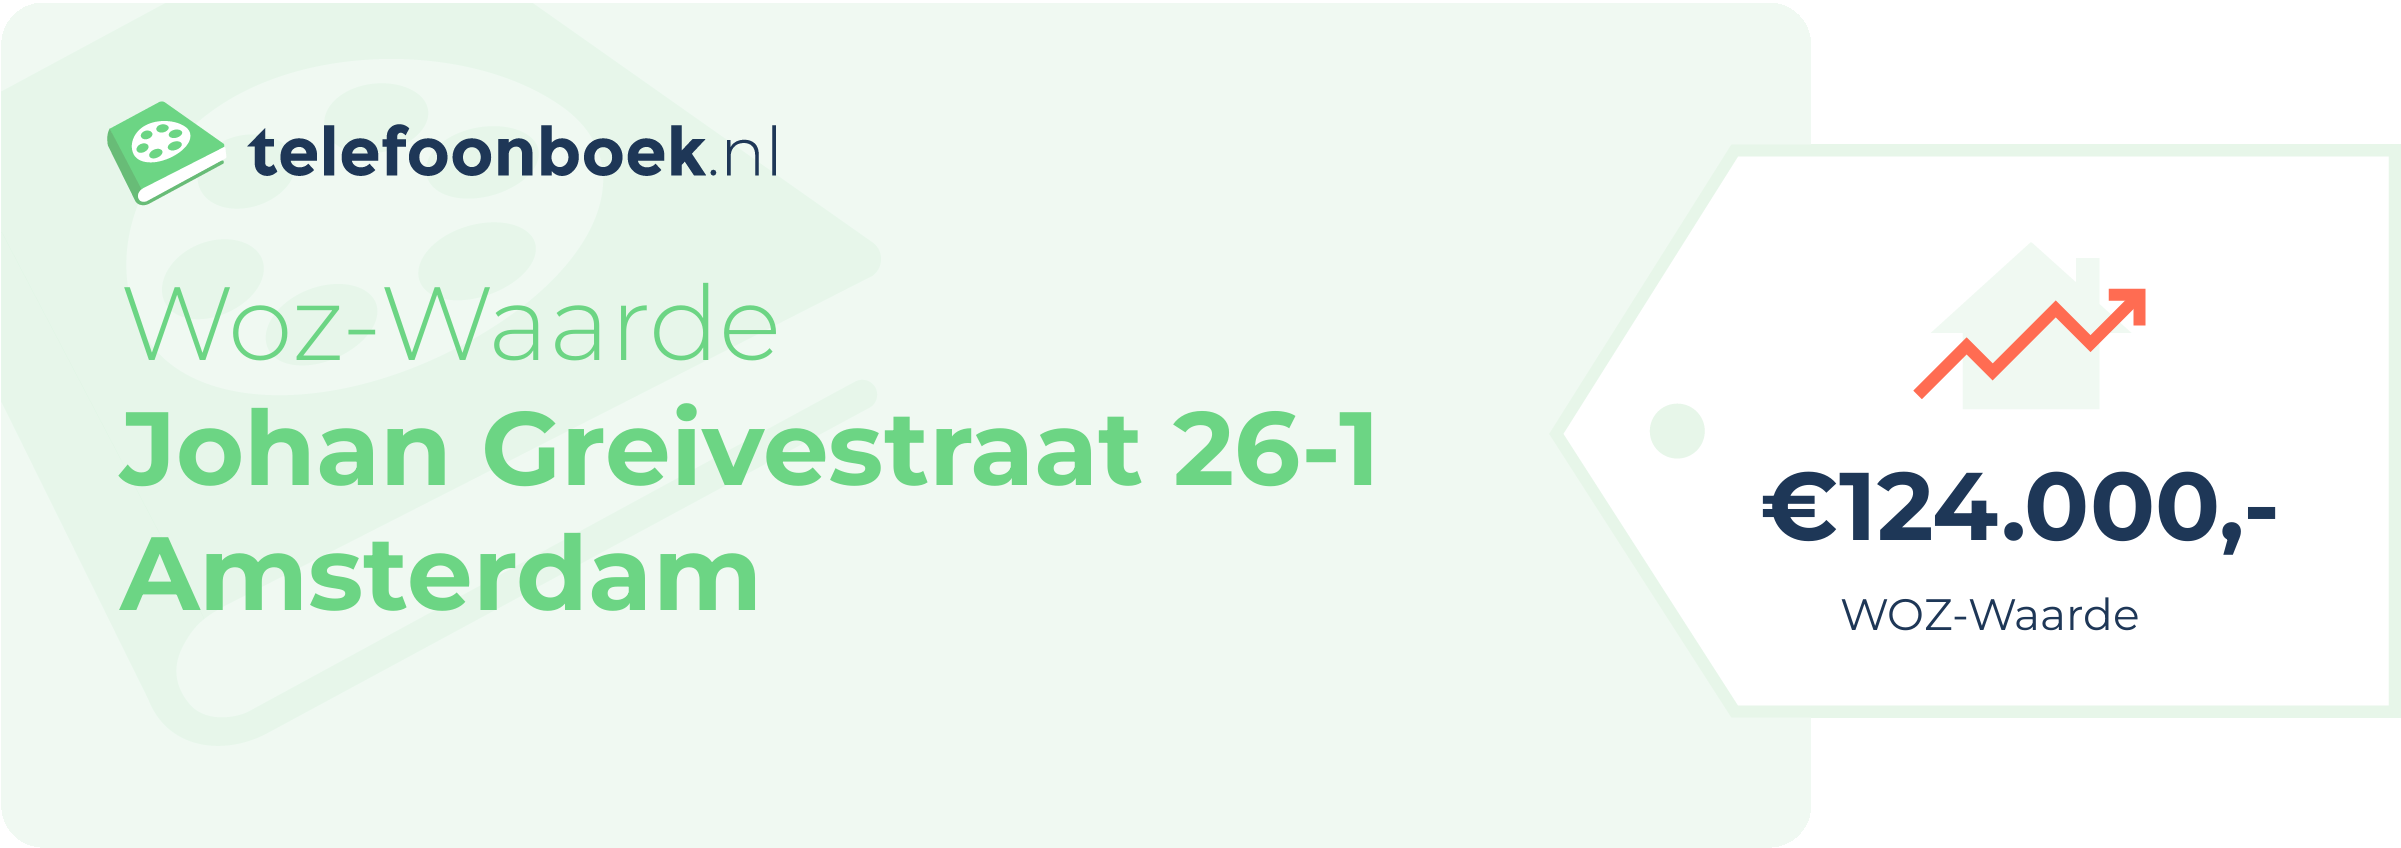 WOZ-waarde Johan Greivestraat 26-1 Amsterdam